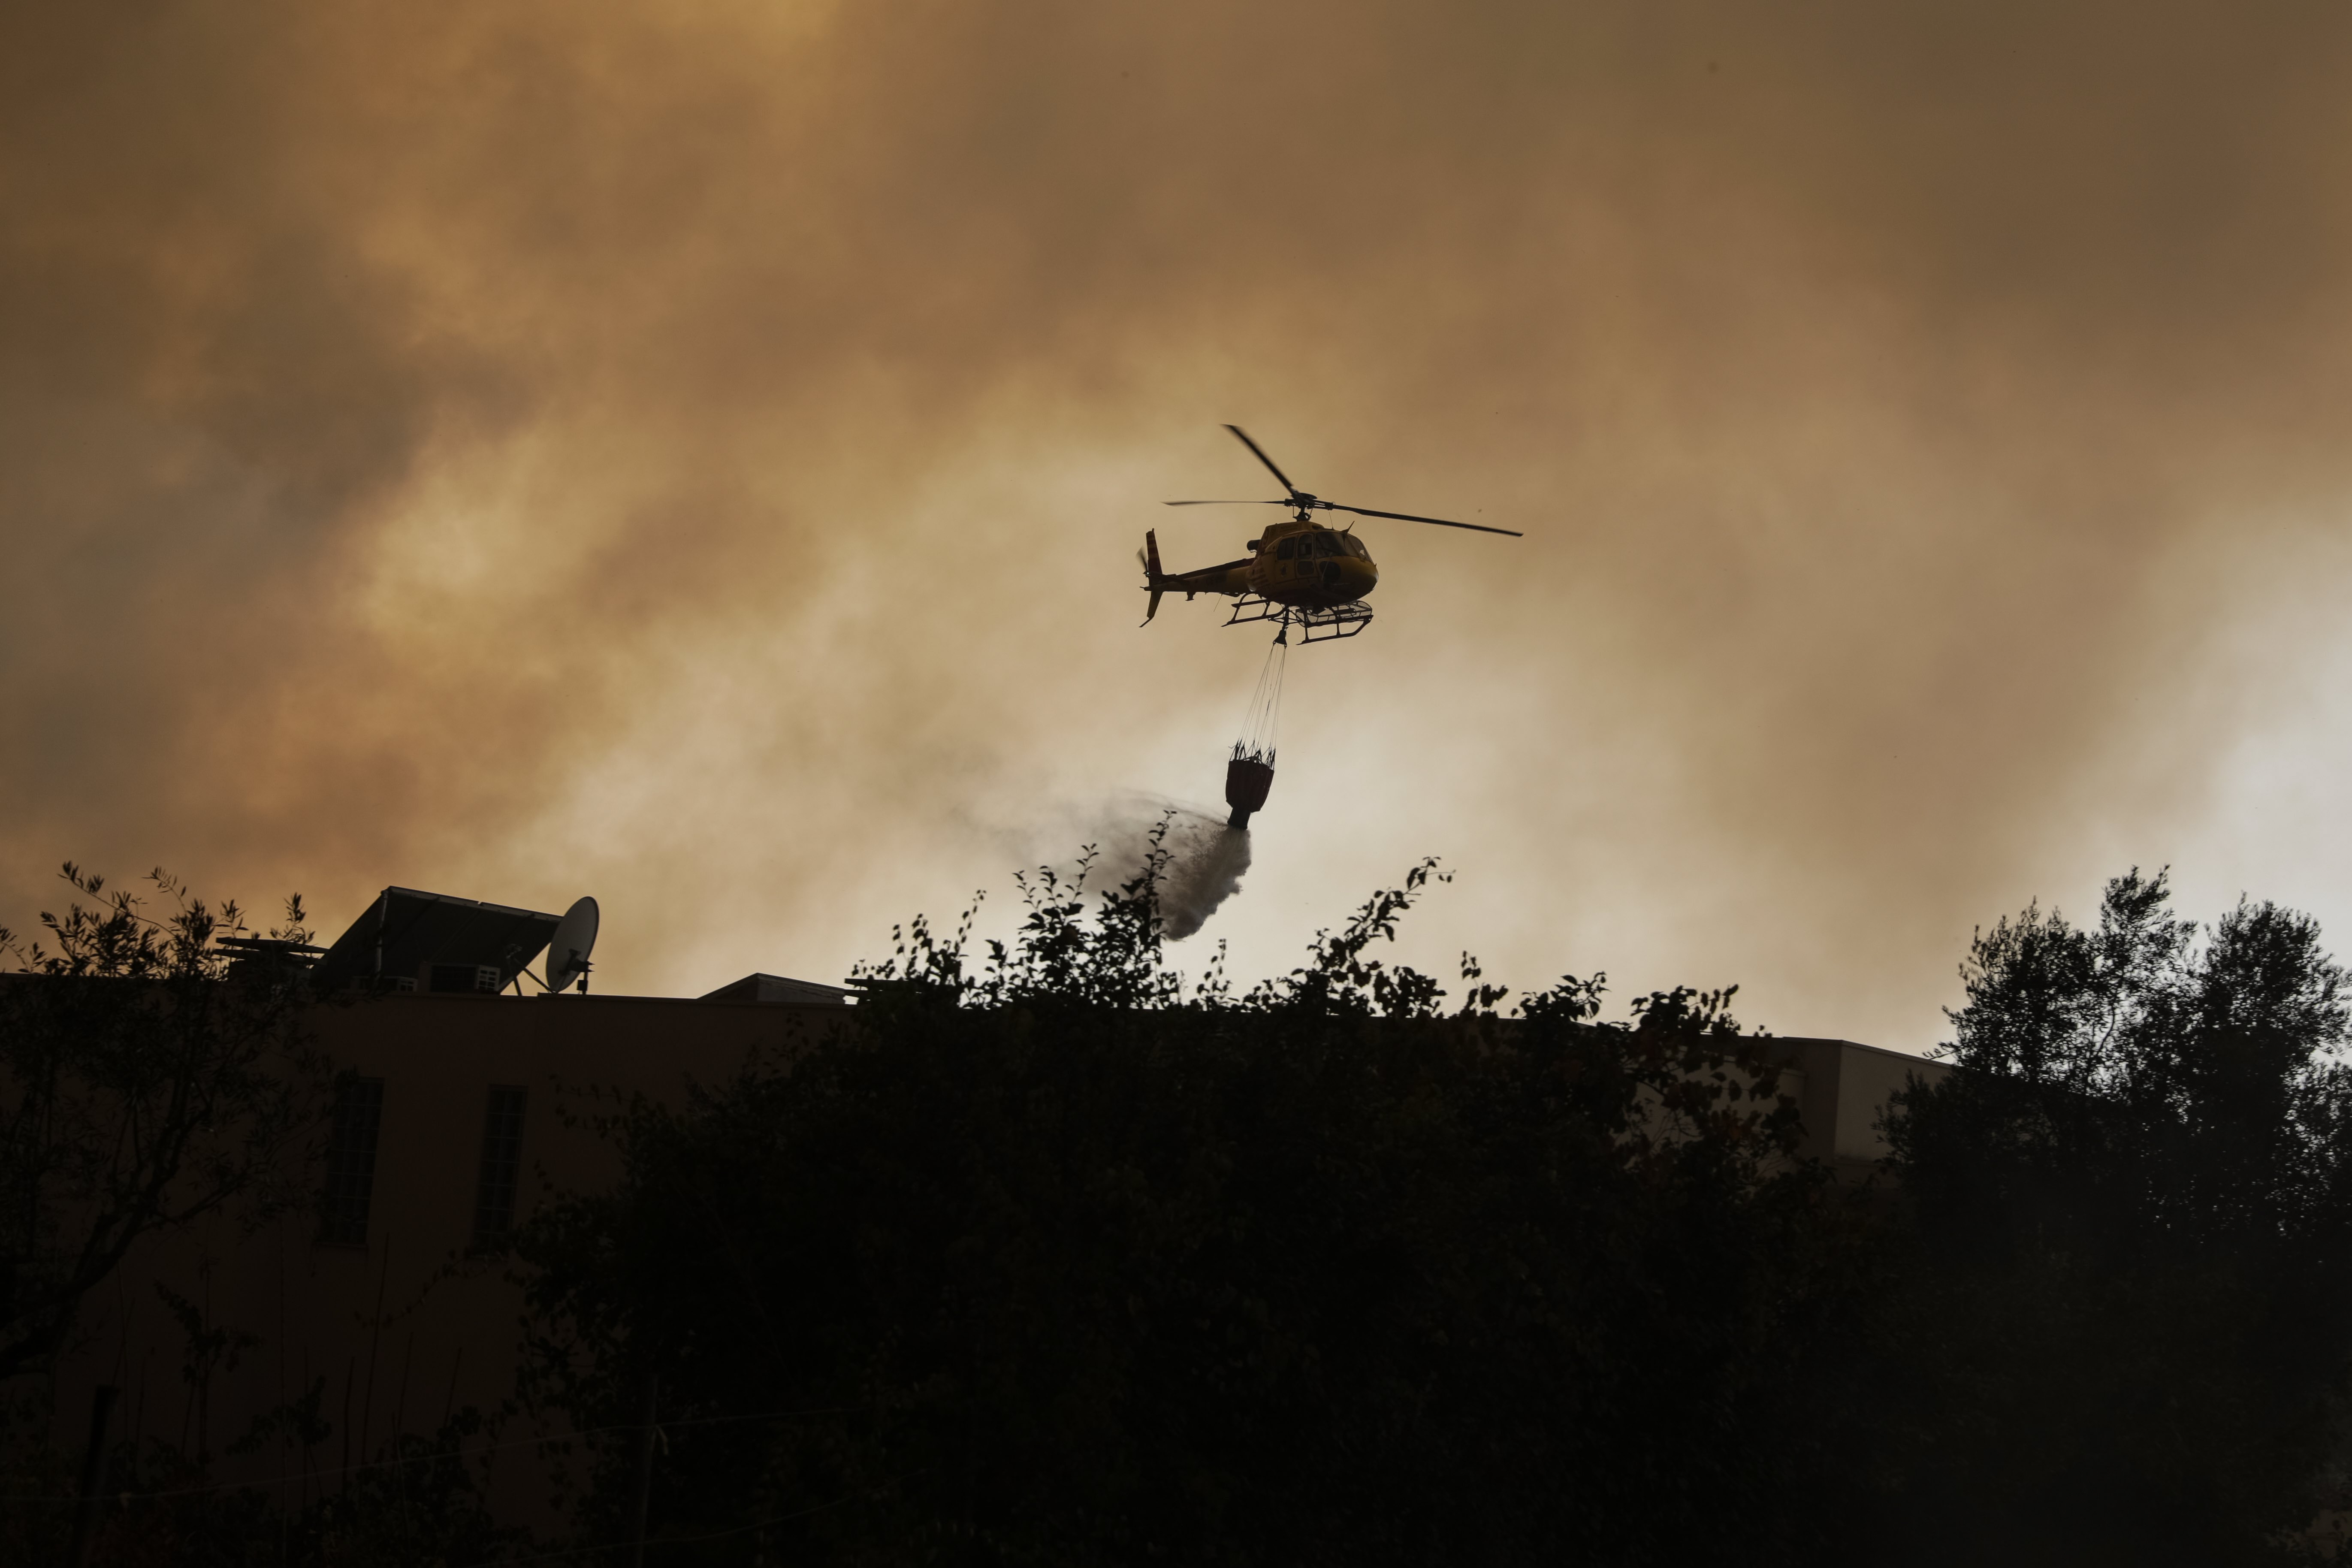 Горски пожари в средата на октомври опостушиха огромни горски и селищни площи и взеха десетки жертви в Португалия